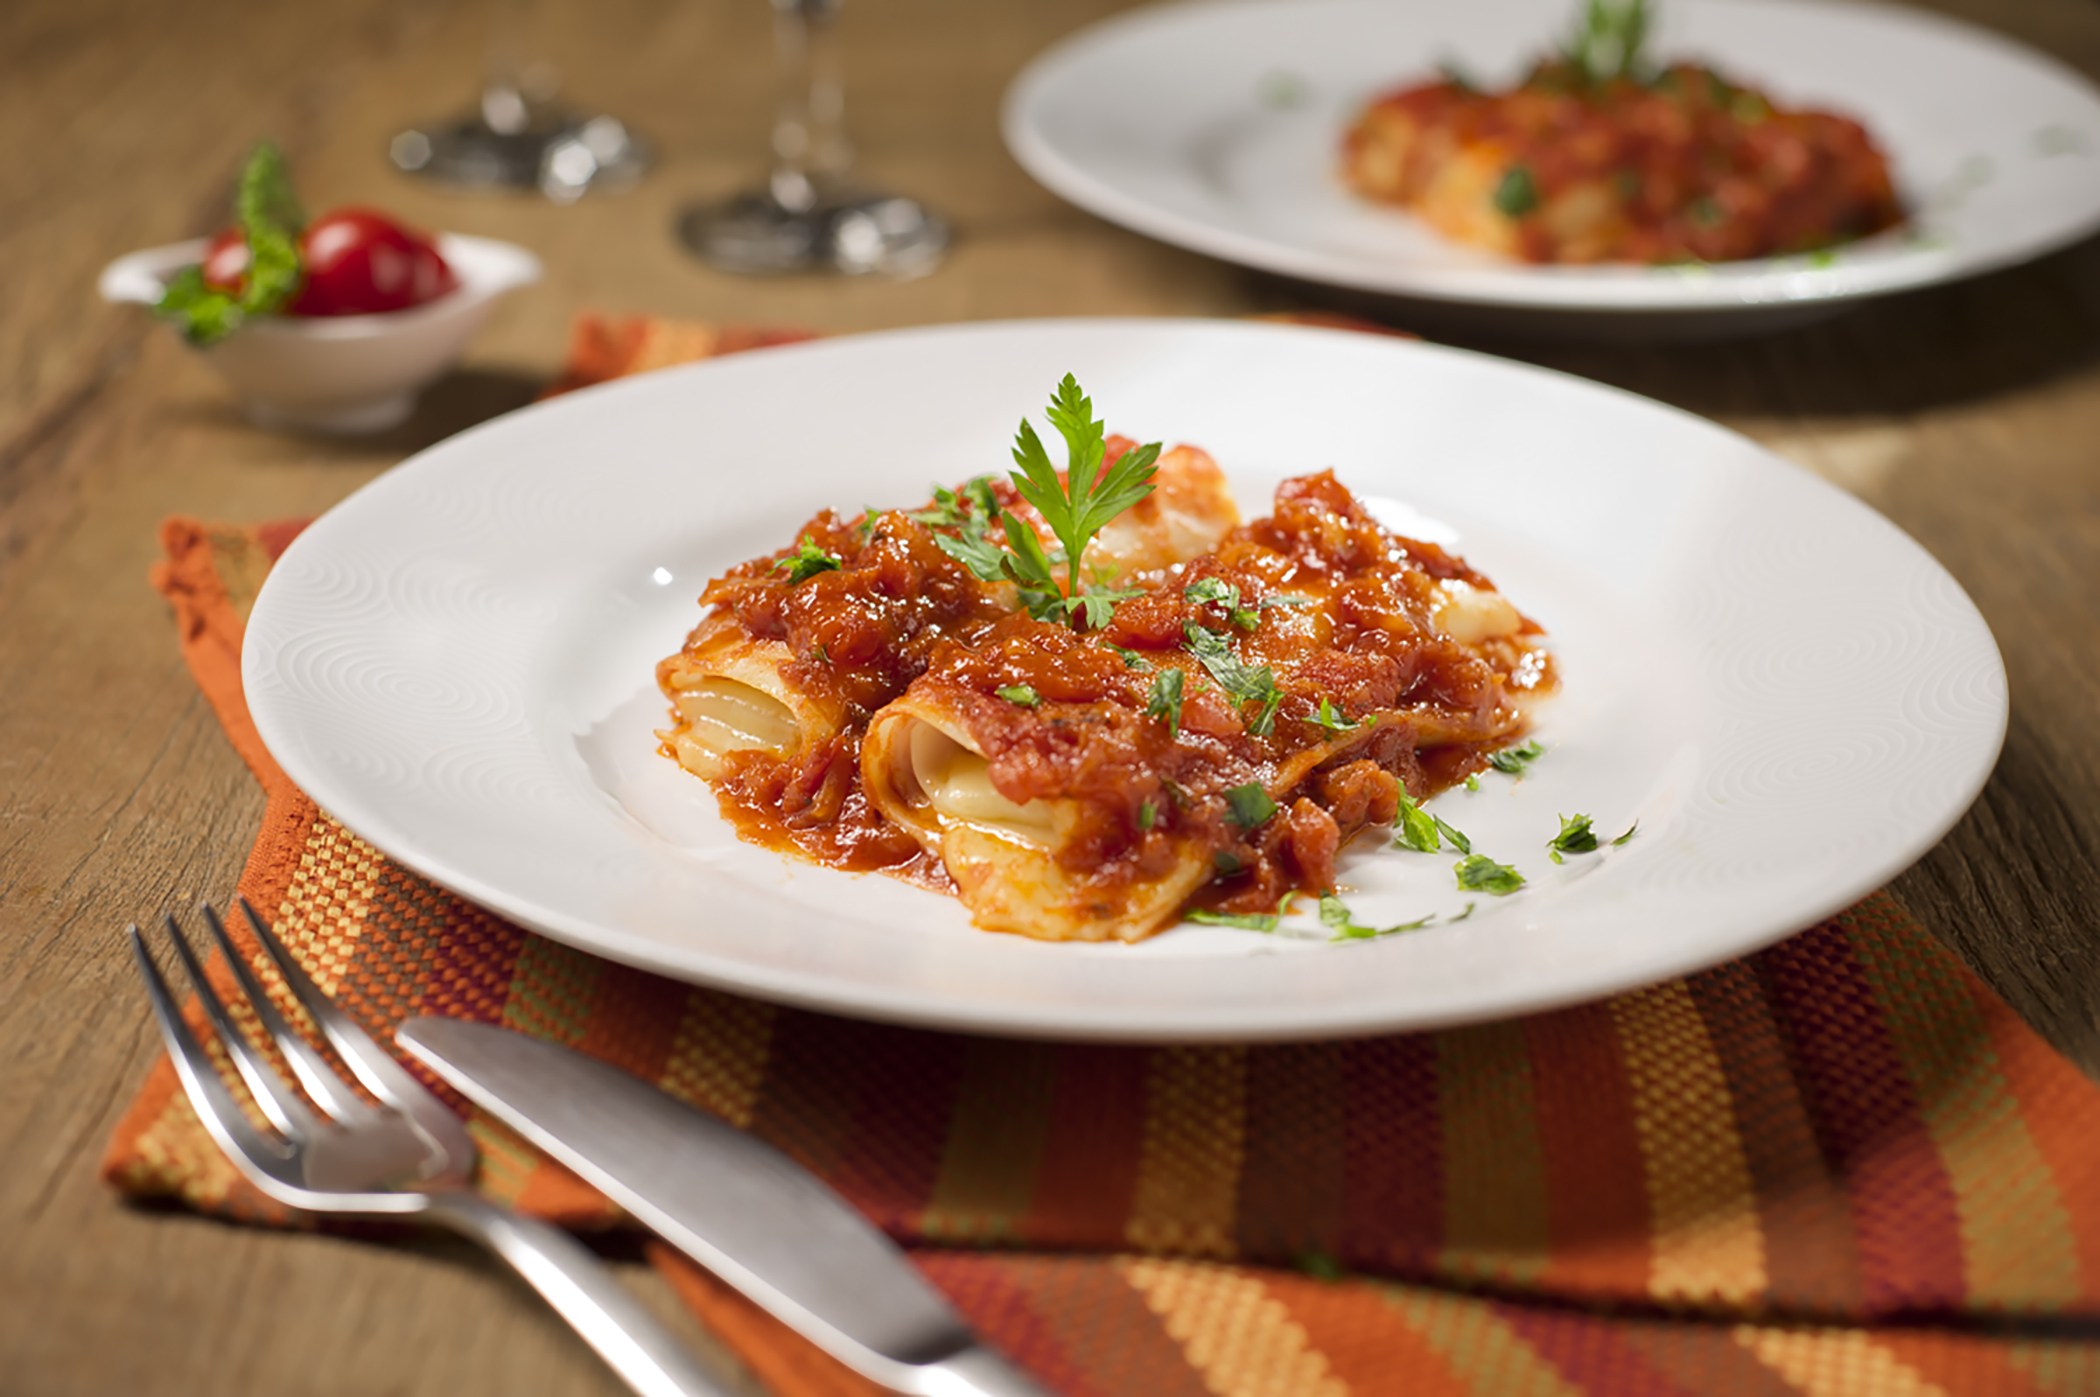 Celebre o Dia do Imigrante Italiano com receitas que remetem à gastronomia italiana